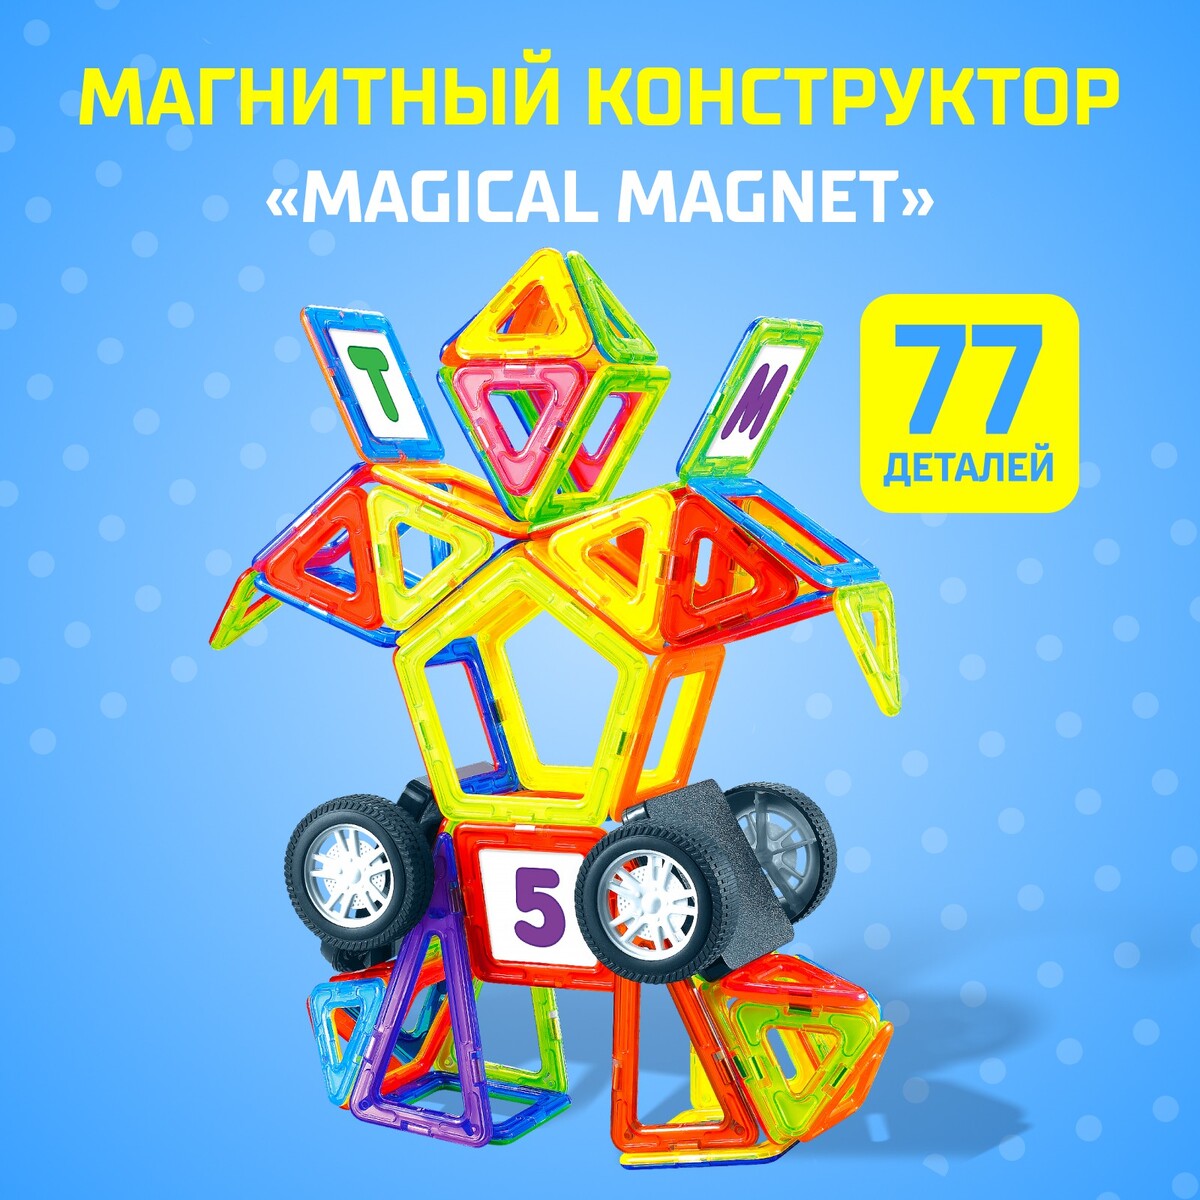 Магнитный конструктор magical magnet, 77 деталей, детали матовые конструктор магнитный 42 детали